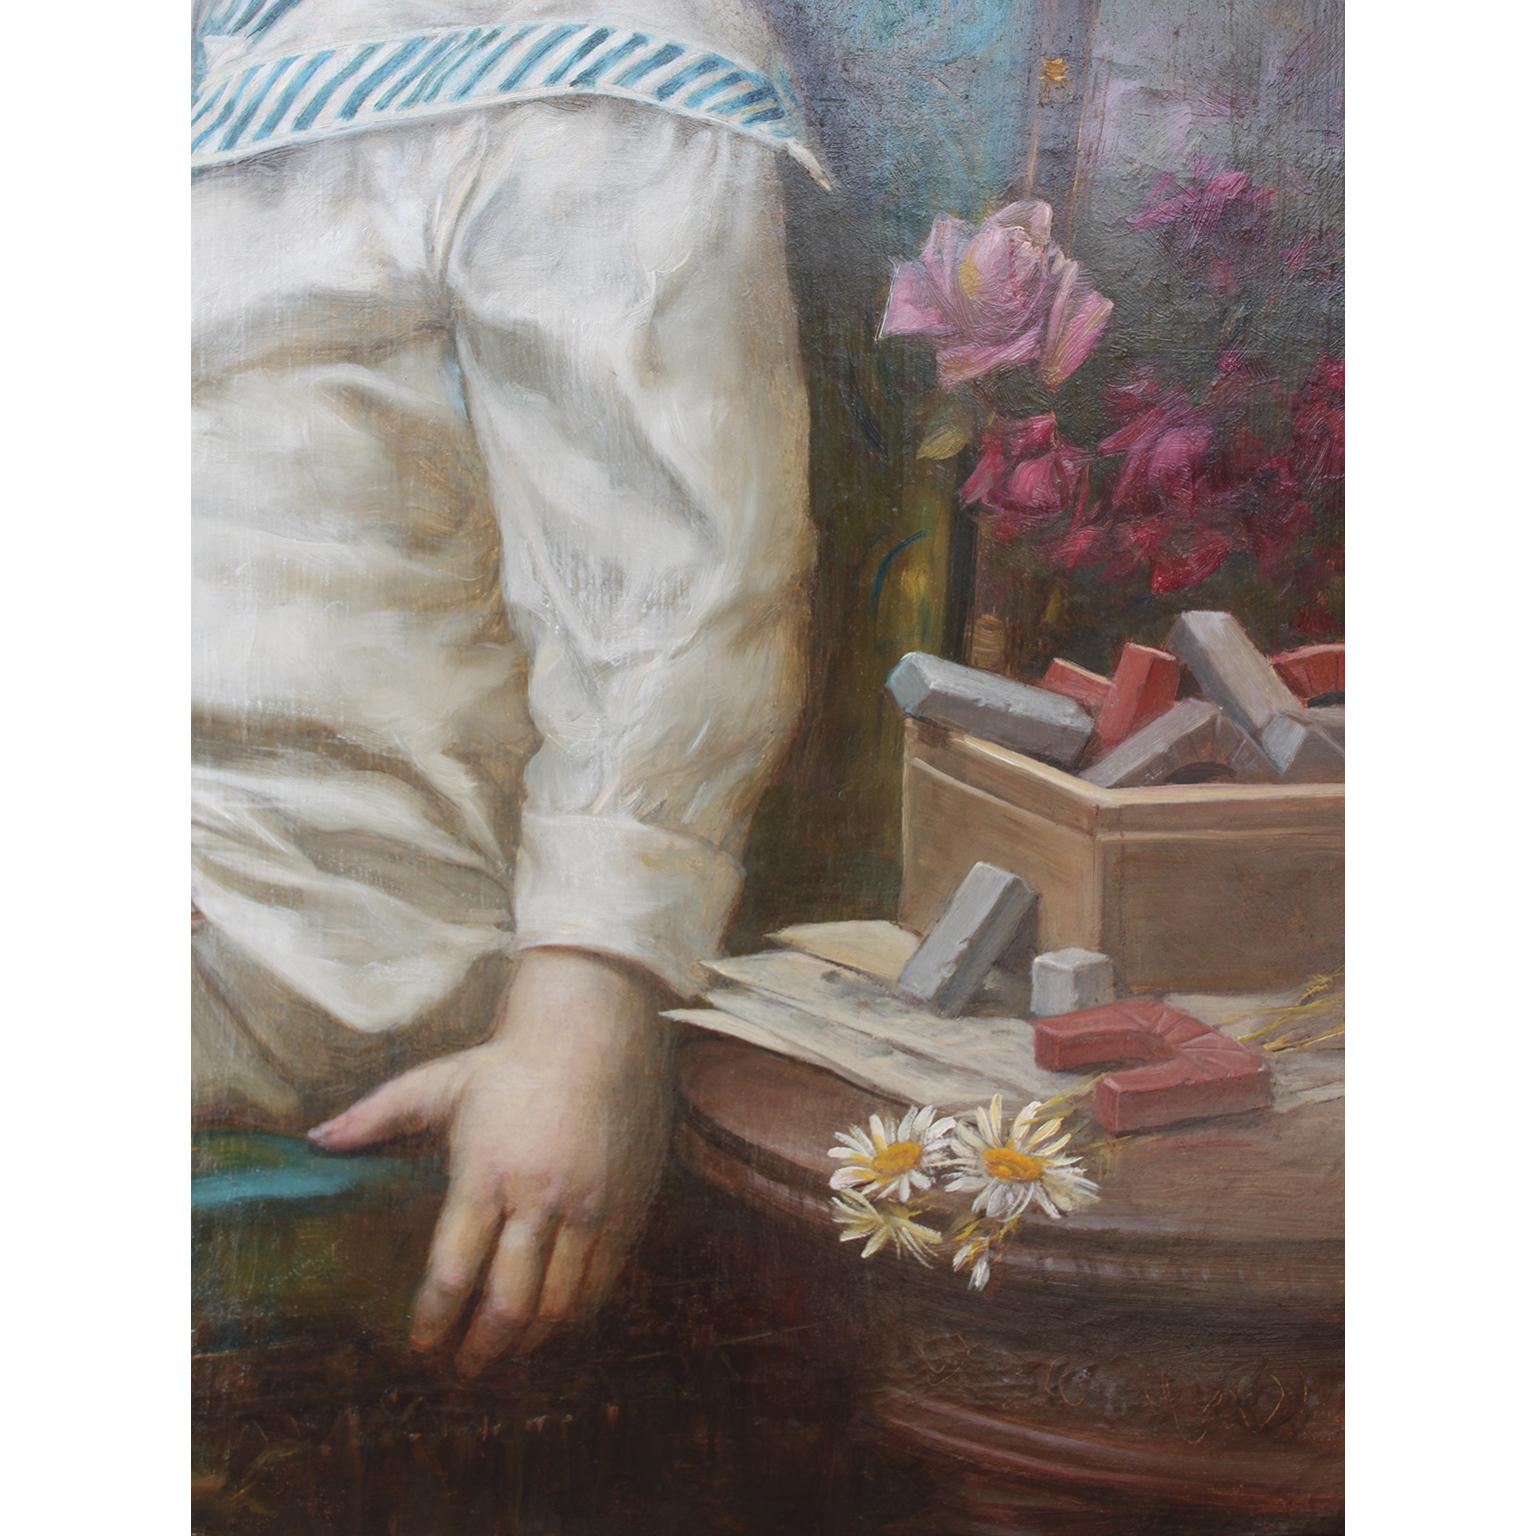 Hans Zatzka, Austrian (1859-1945) Oil on Canvas 